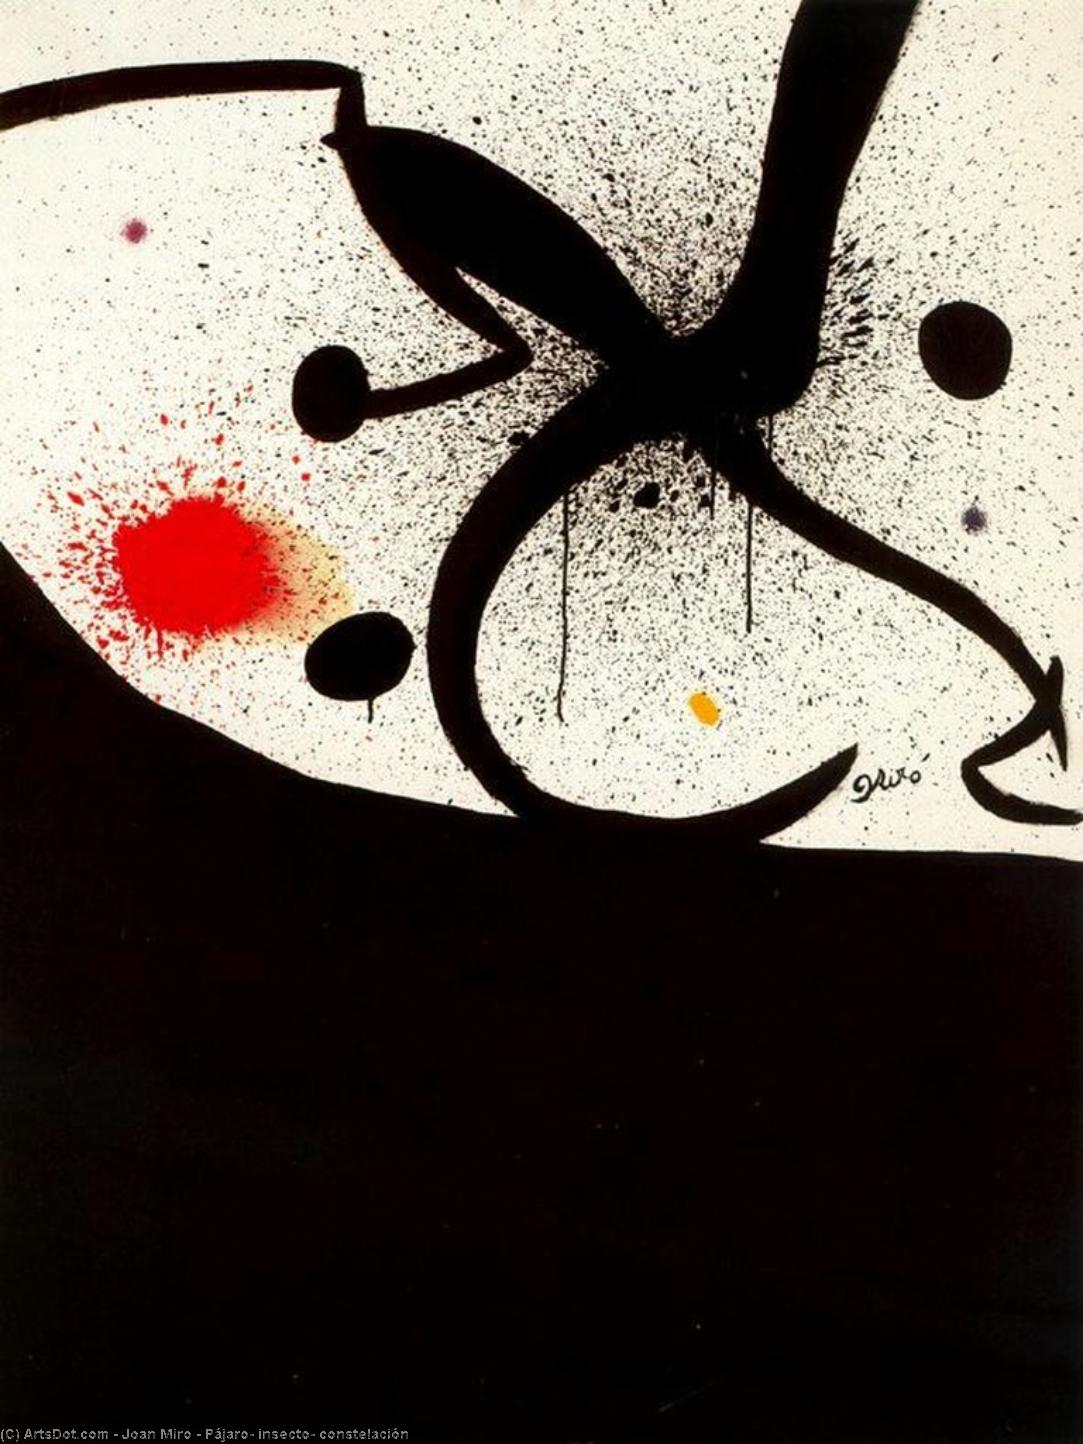 WikiOO.org - Encyclopedia of Fine Arts - Maleri, Artwork Joan Miro - Pájaro, insecto, constelación